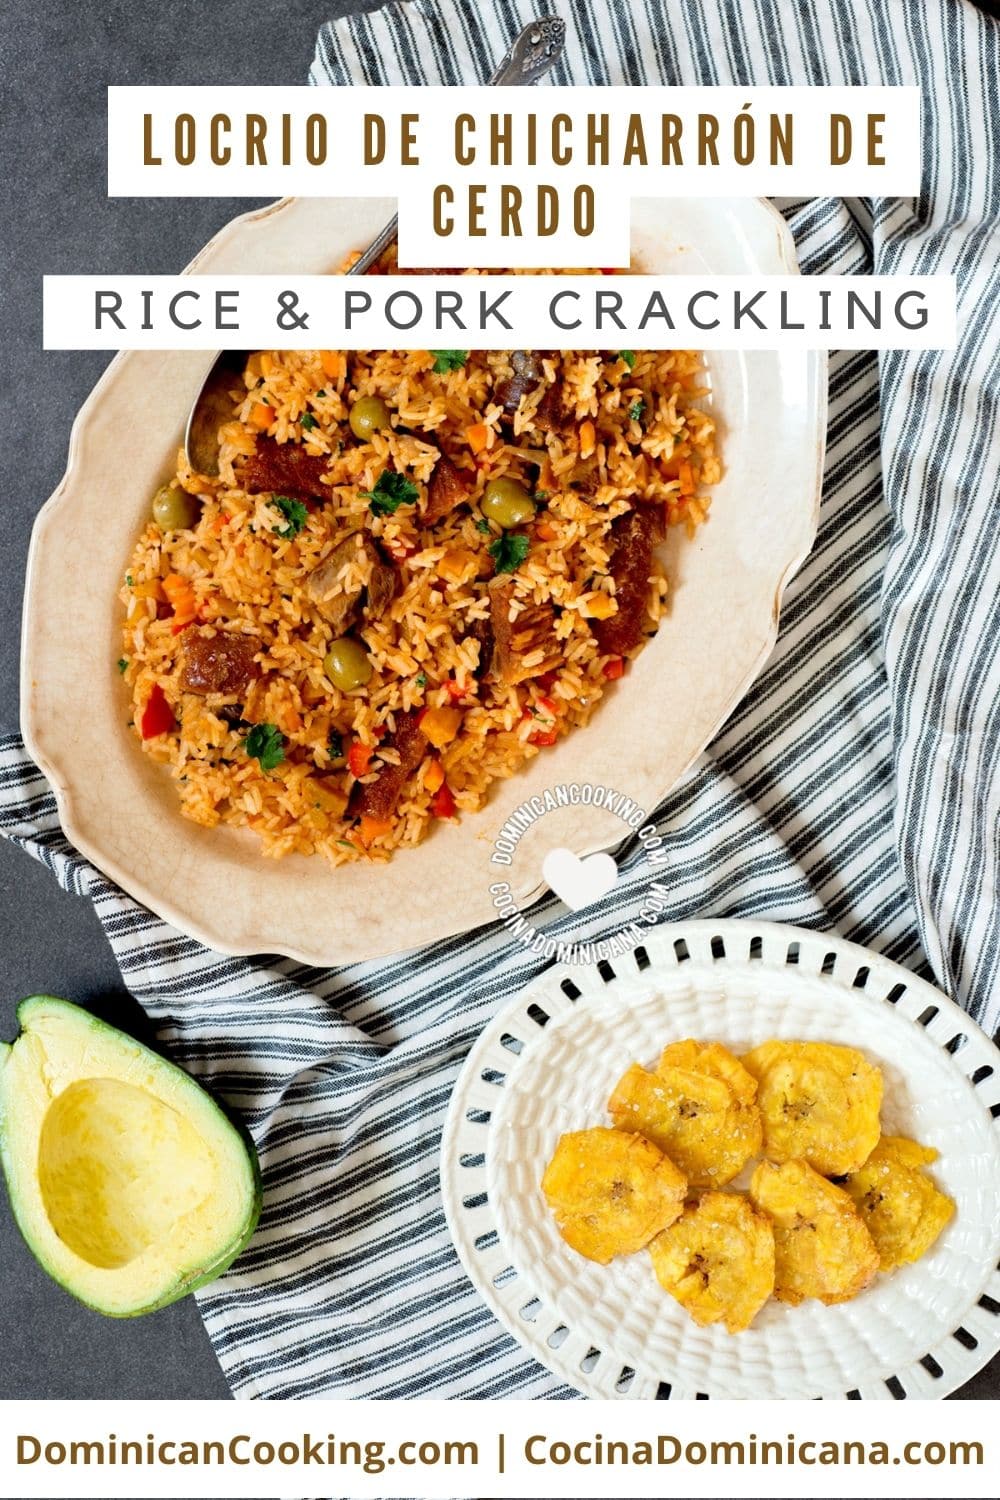 Locrio de chicharron de cerdo (rice and pork crackling) recipe.